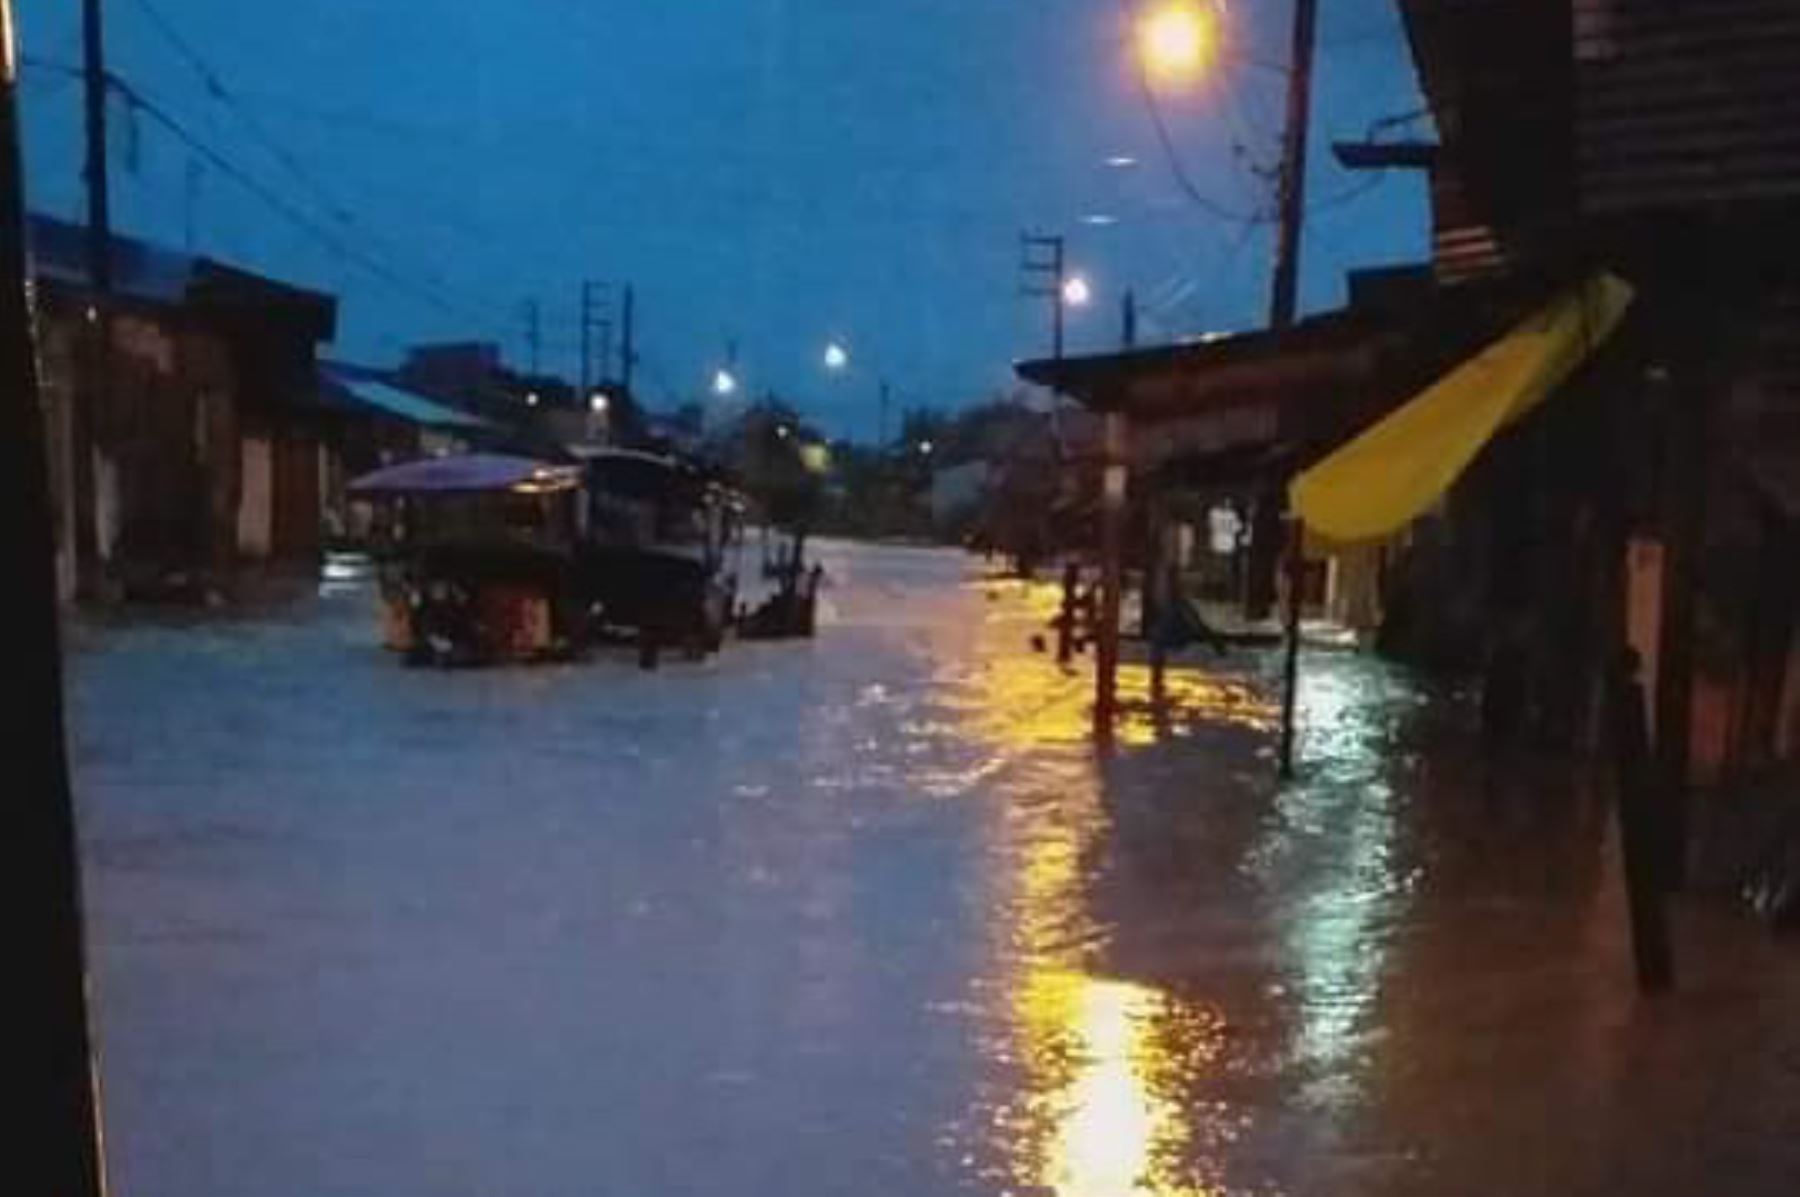 Lluvia torrencial inunda viviendas y calles de Iquitos. Foto: Tony Quispe Cornejo/Facebook